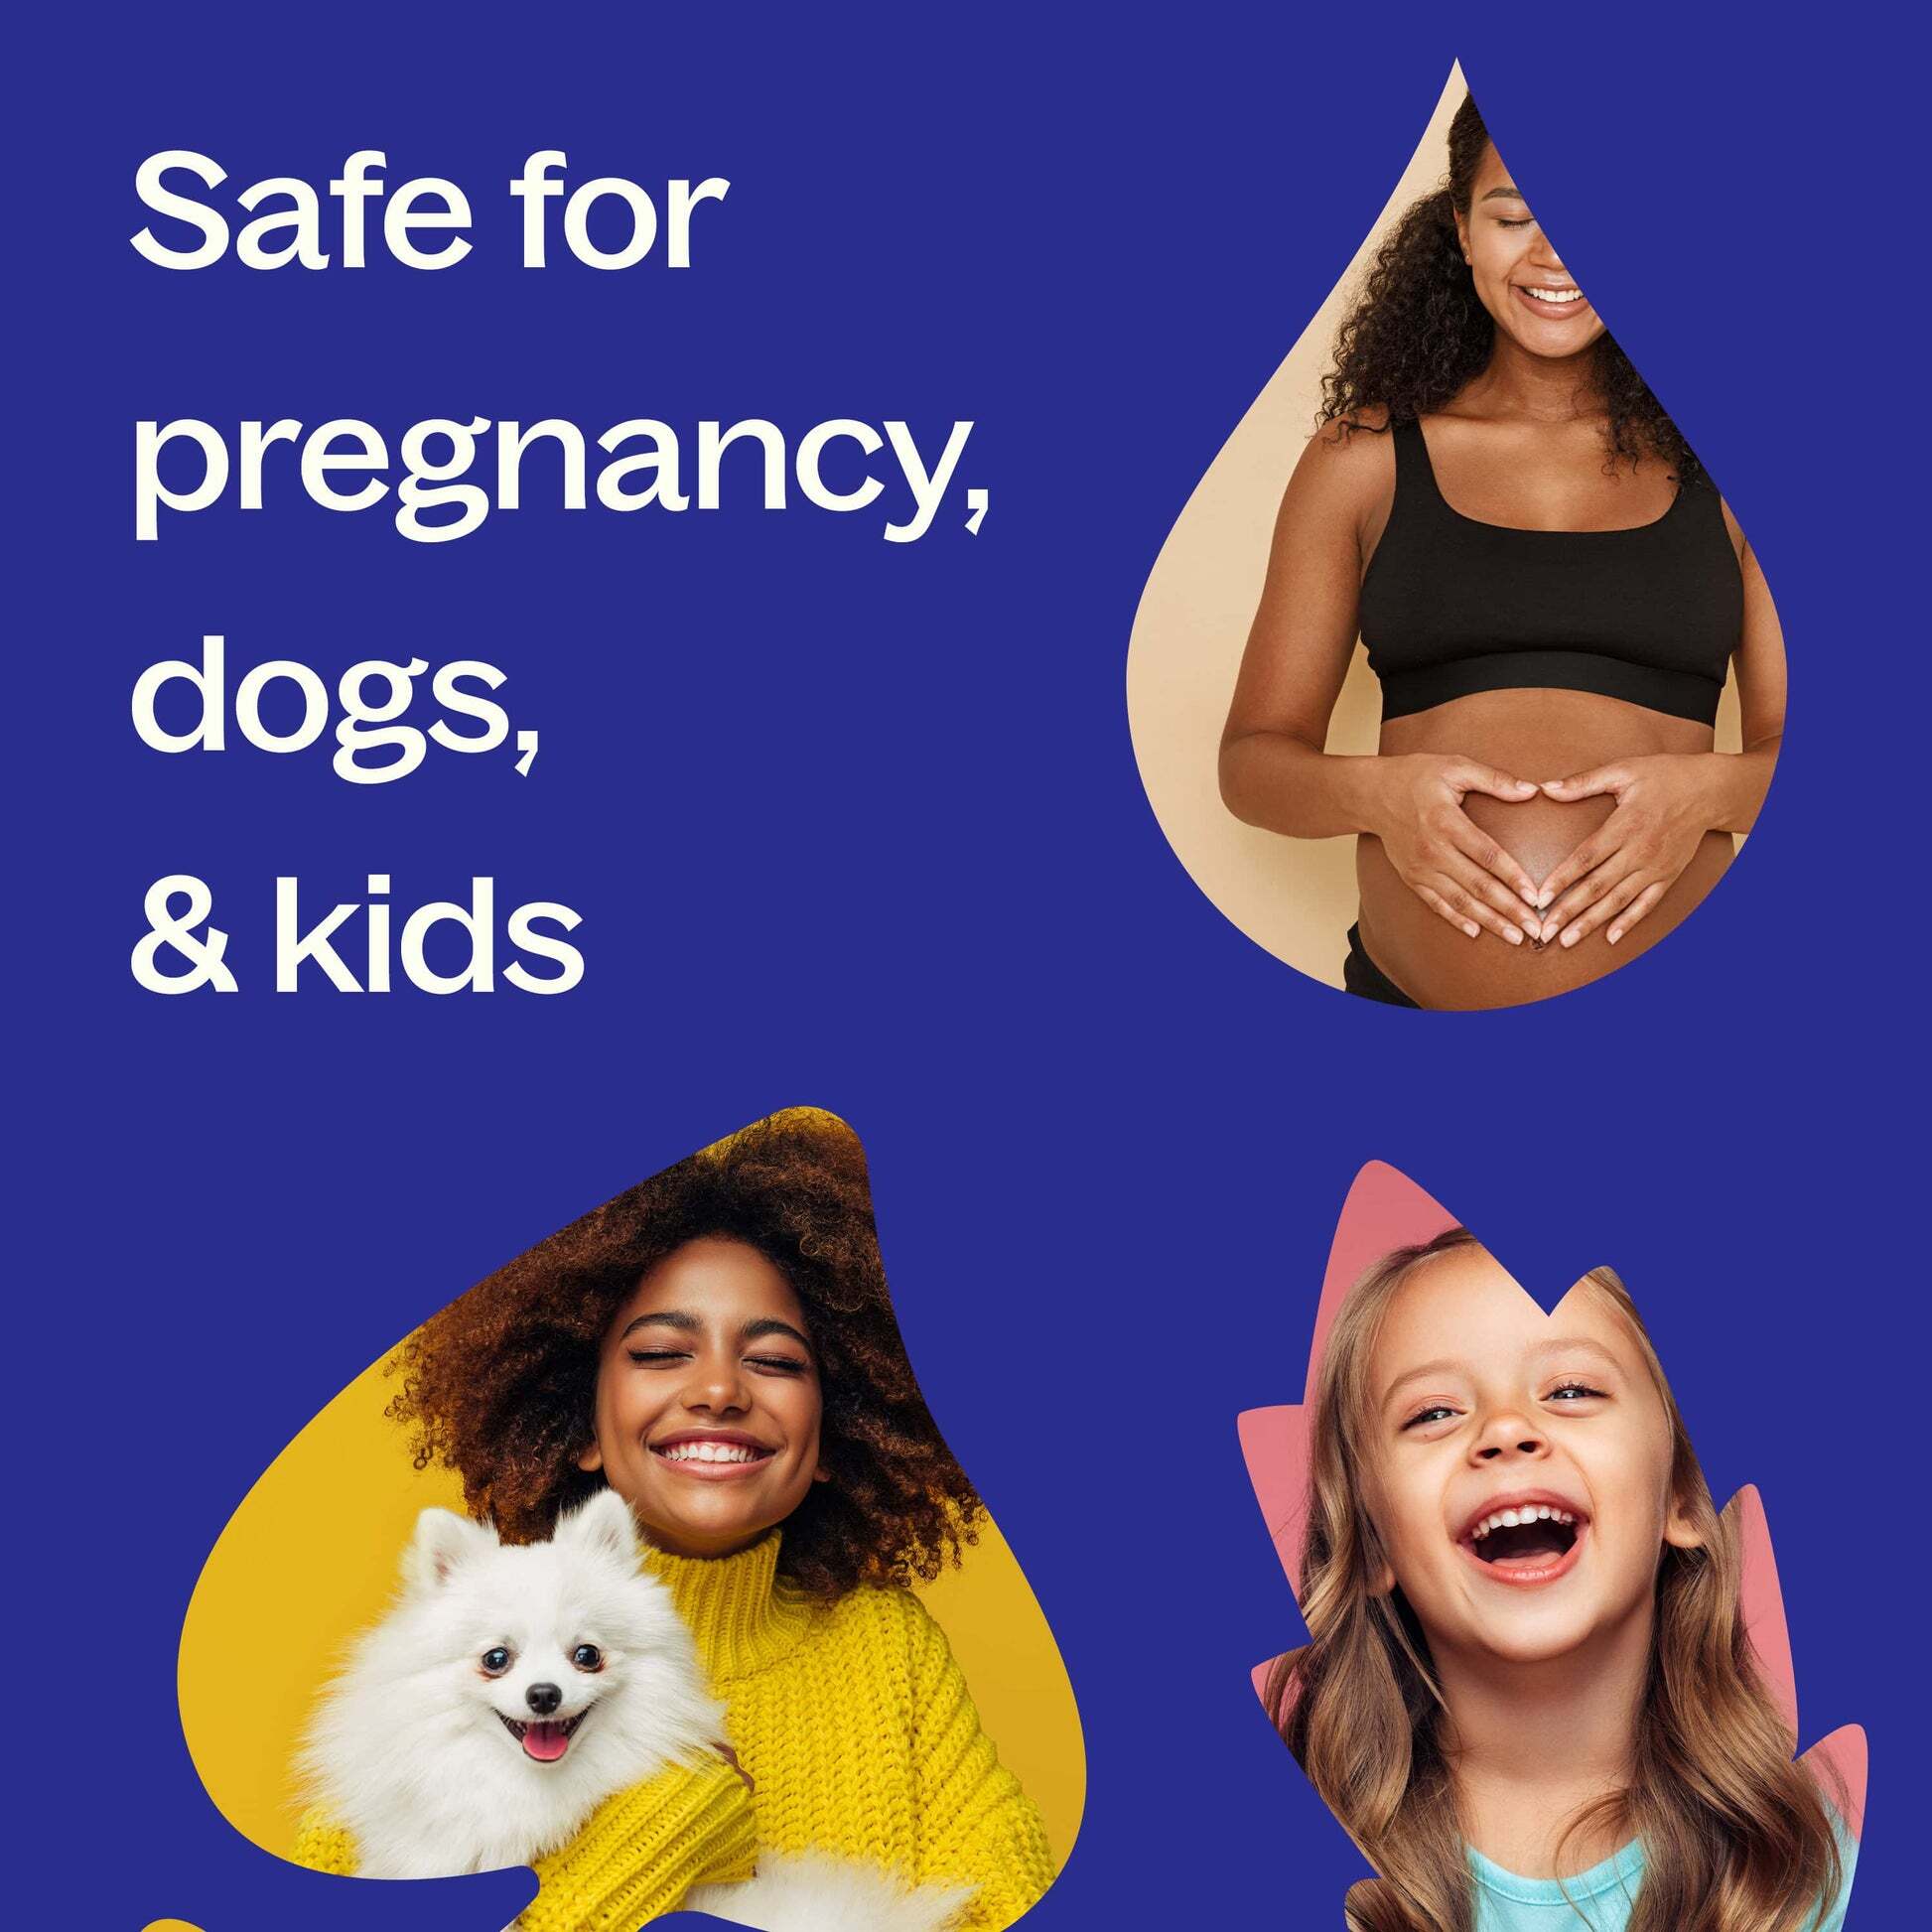 Safety-Pregnancy_Dogs_Kids-min_1946x